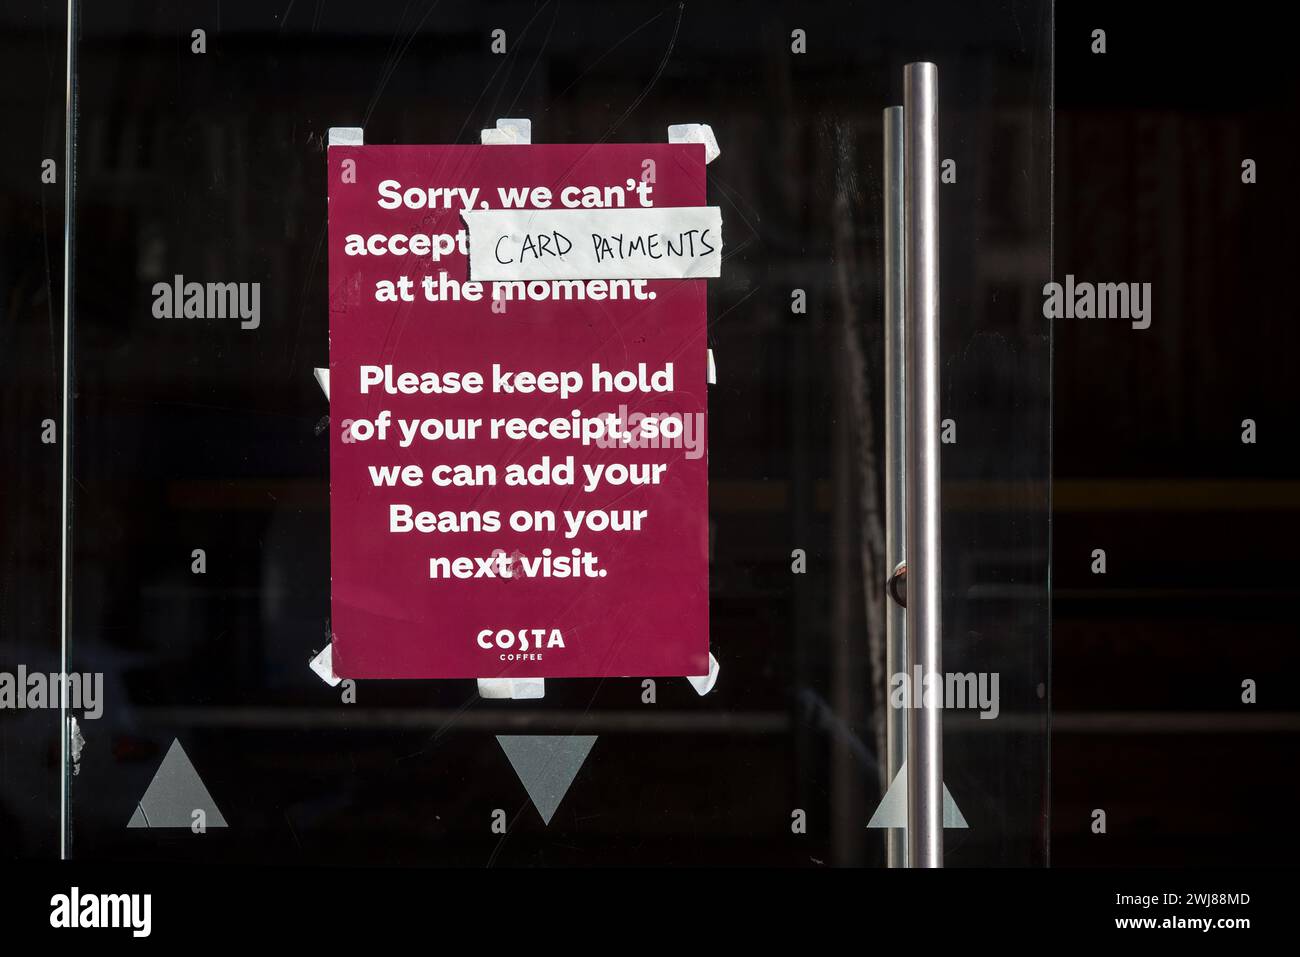 Avis sur la porte d'un café Costa informez les clients qu'ils ne peuvent pas accepter les paiements par carte pour le moment. Banque D'Images